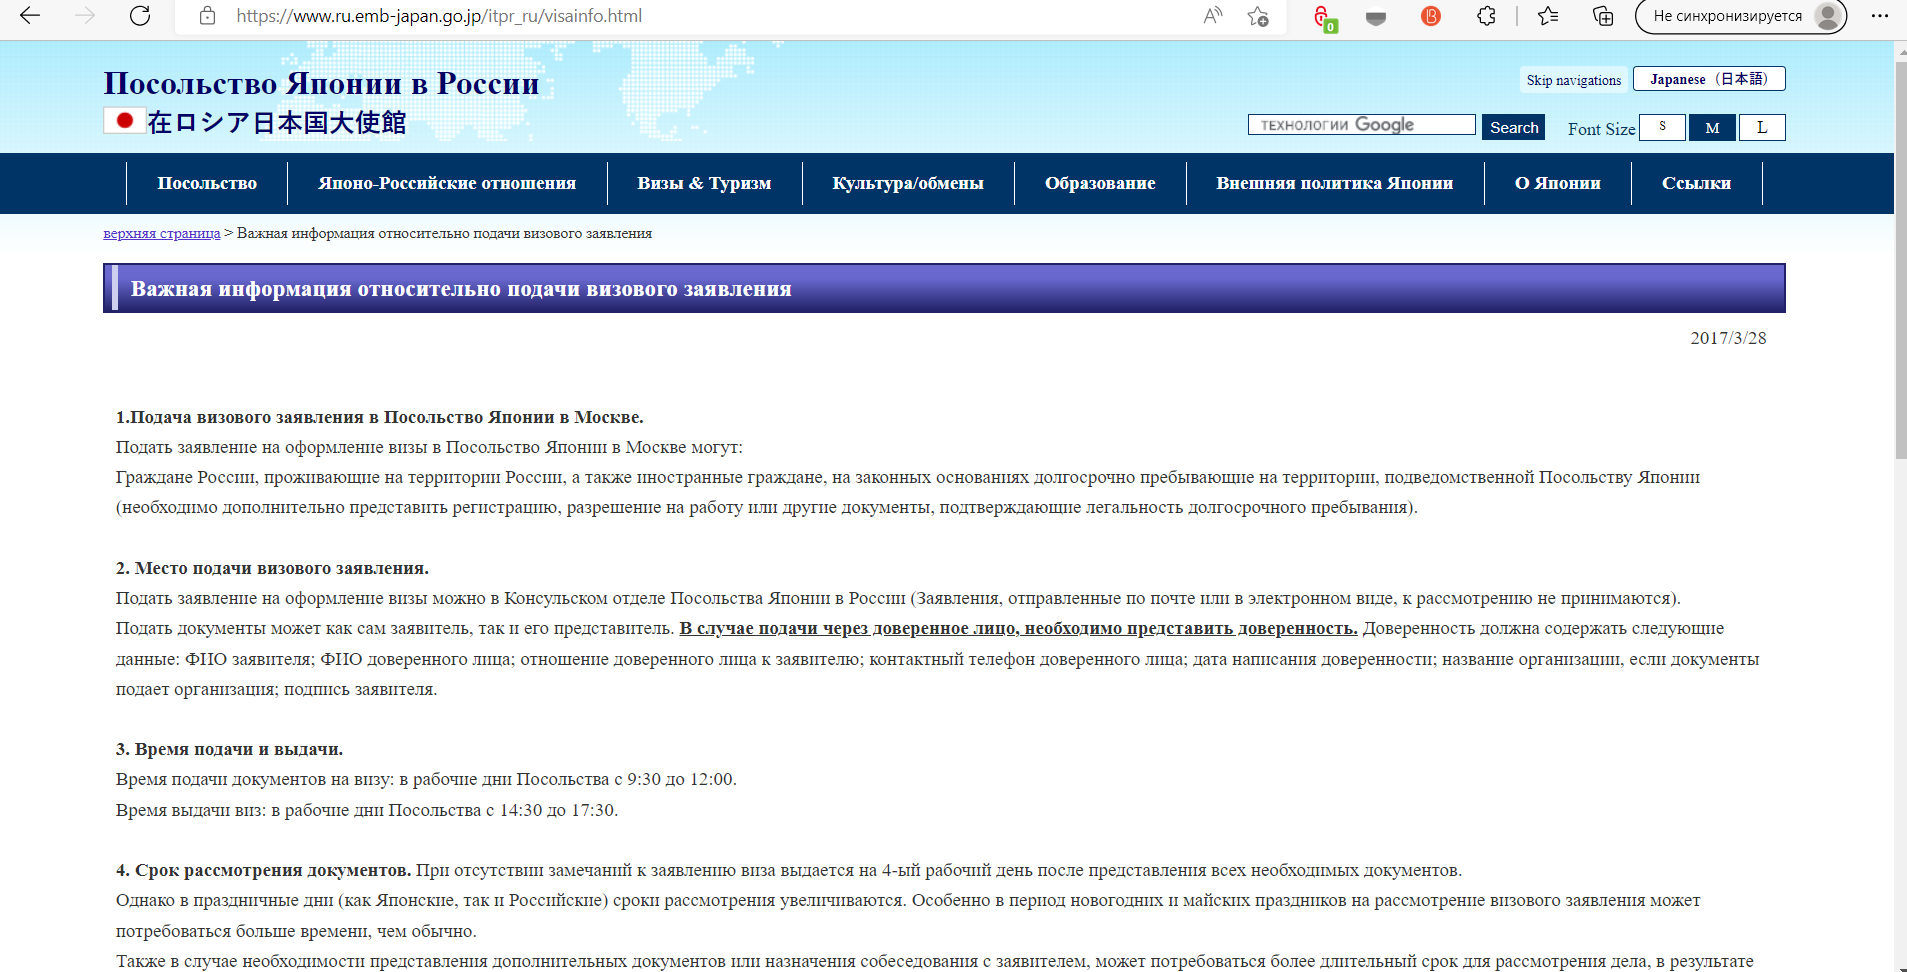 Сайт Посольства Японии в России